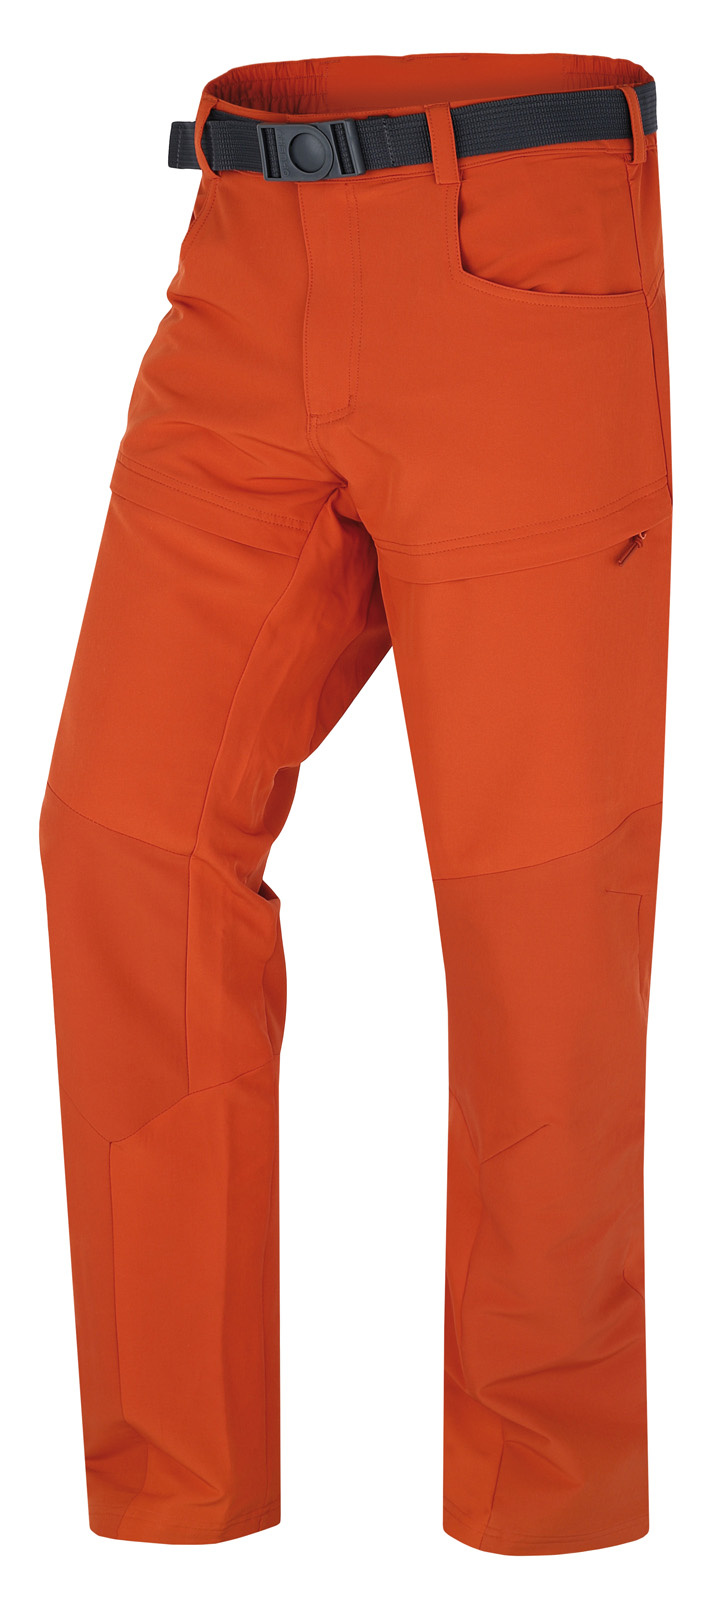 Pánské outdoorové kalhoty HUSKY Keiry oranžové Velikost: L